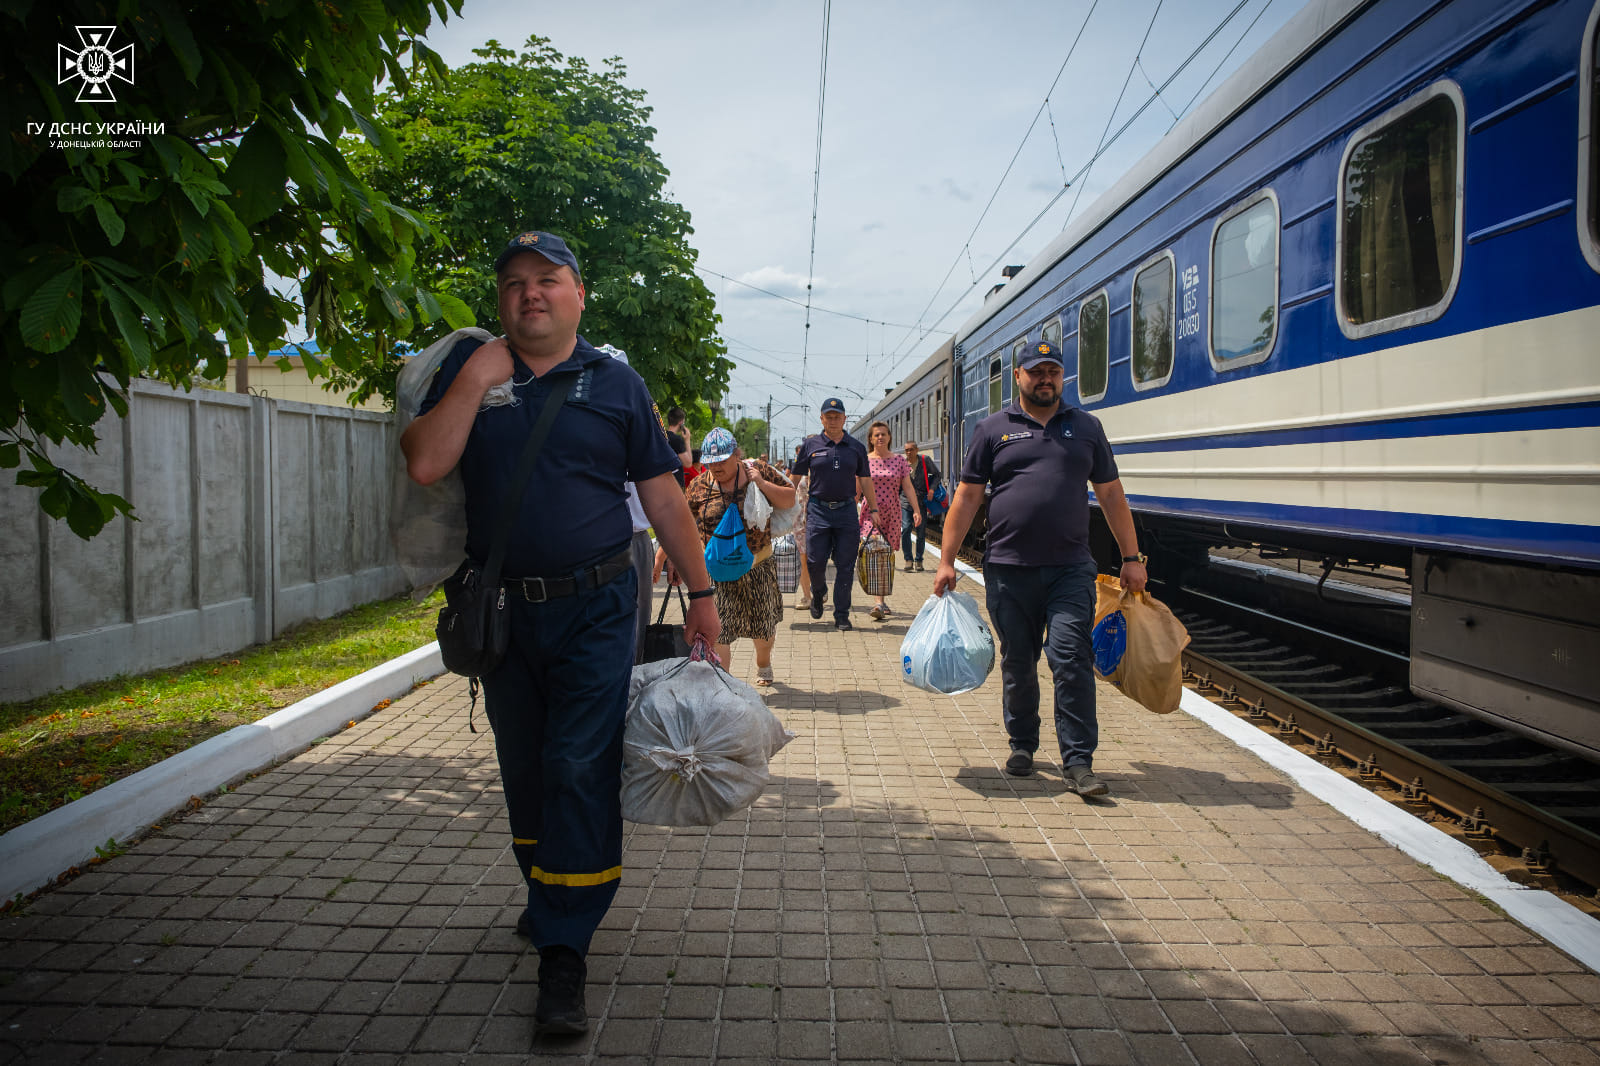 цивільні з Донеччини евакуюються потягом